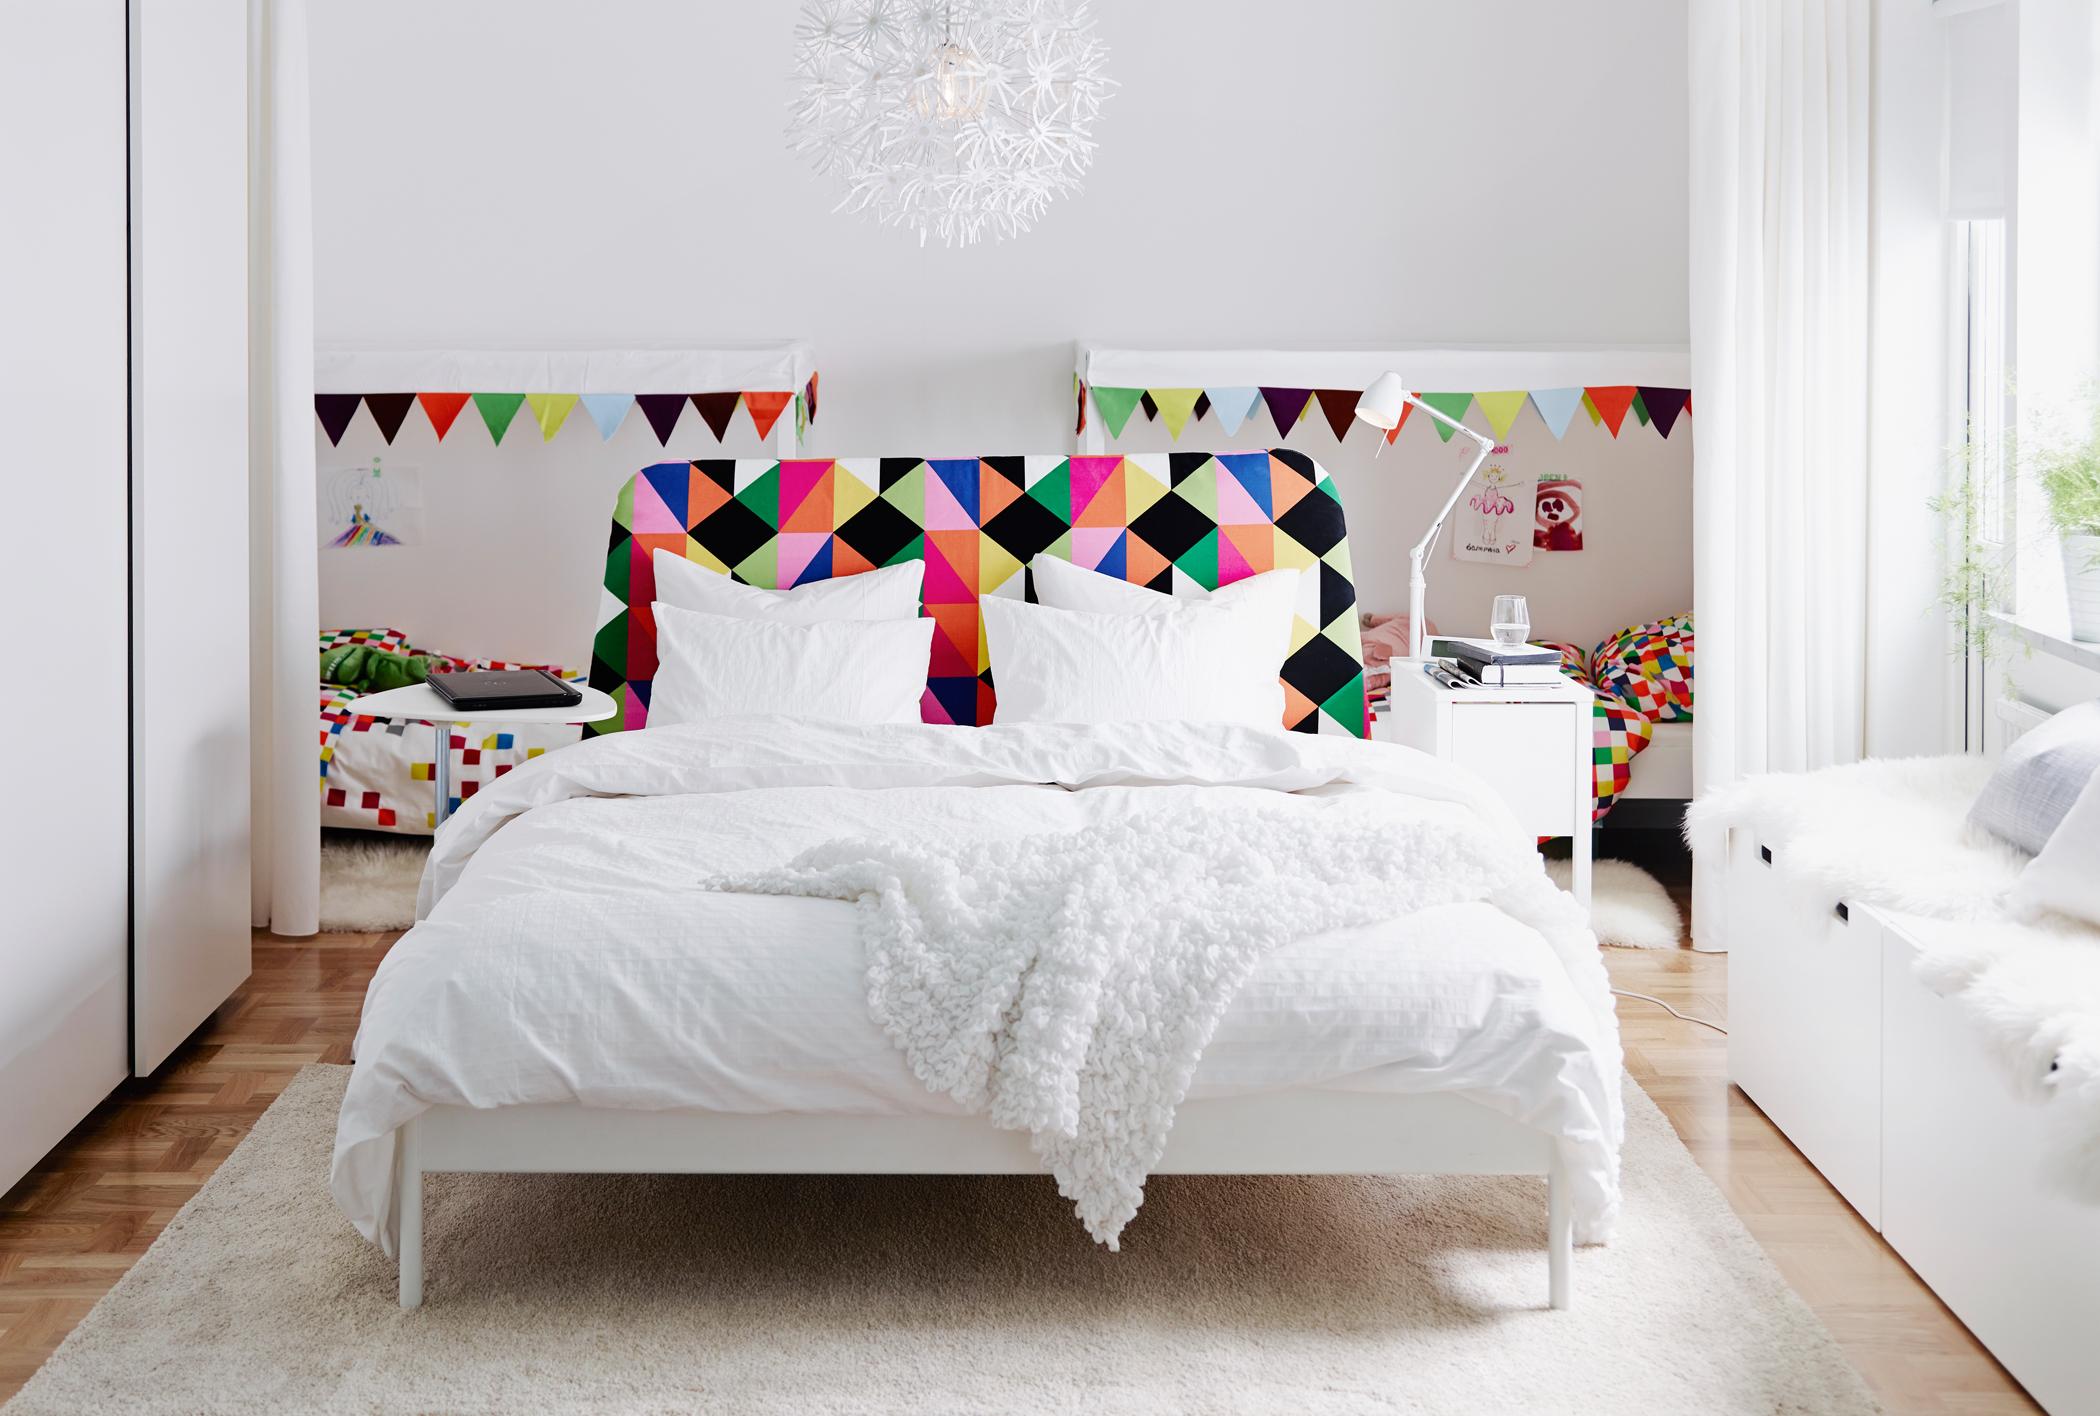 Weißes Schlafzimmer mit bunten Highlights #bettwäsche #tagesdecke #kommode #ikea #kinderbett #tischlampe #buntebettwäsche #wimpelkette ©Inter IKEA Systems B.V.